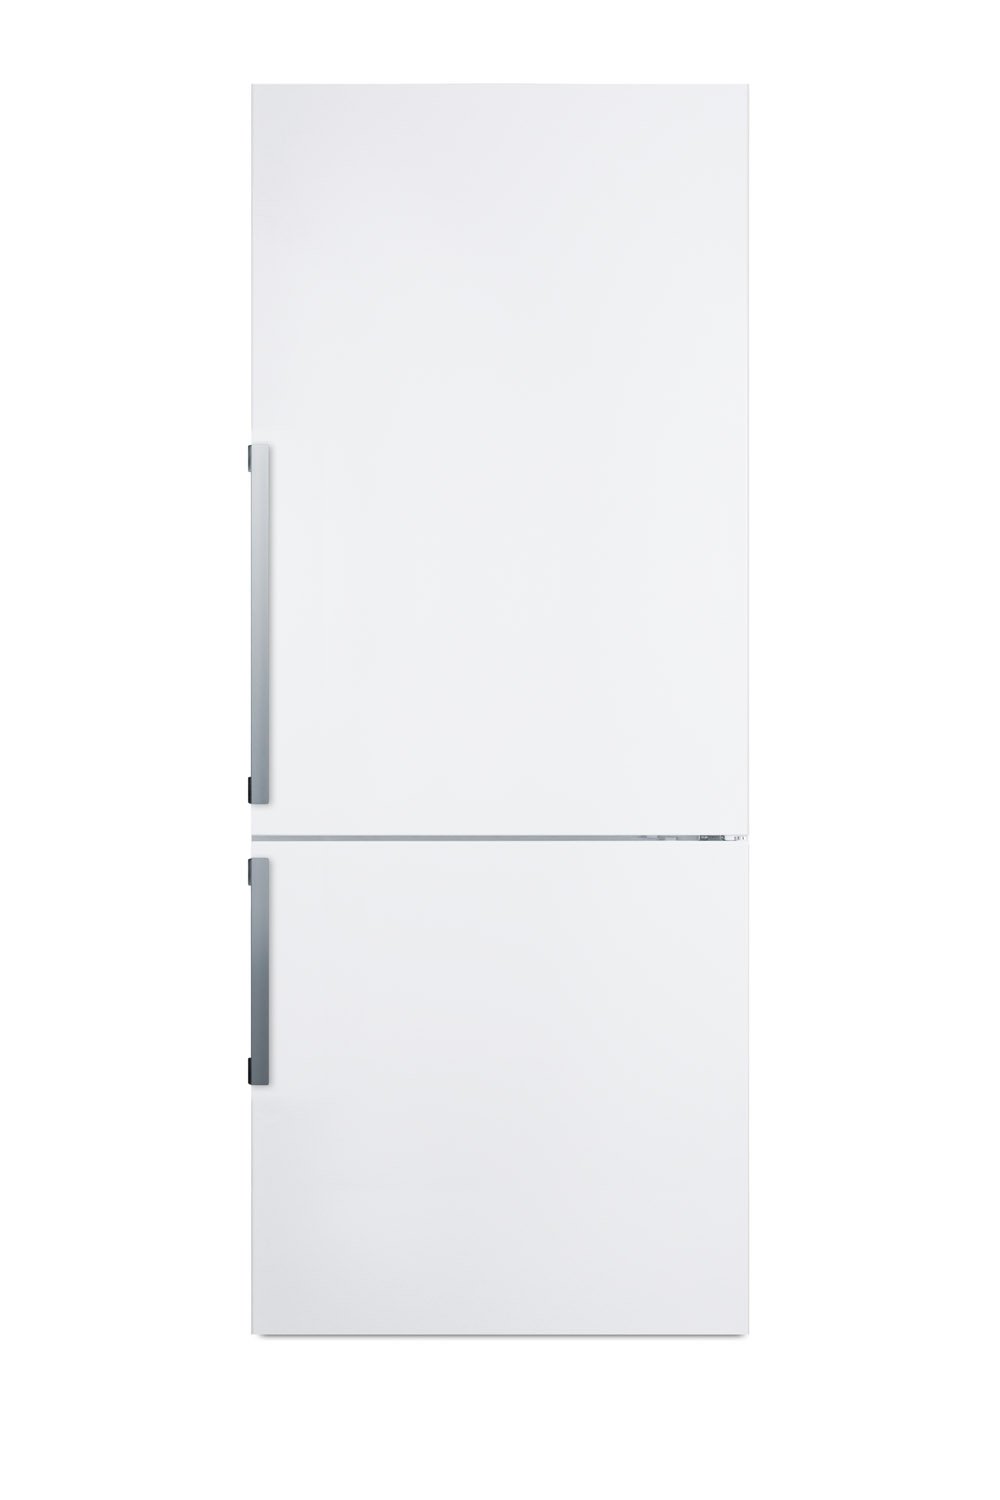 SUMMIT 28" Wide Bottom Freezer Refrigerator